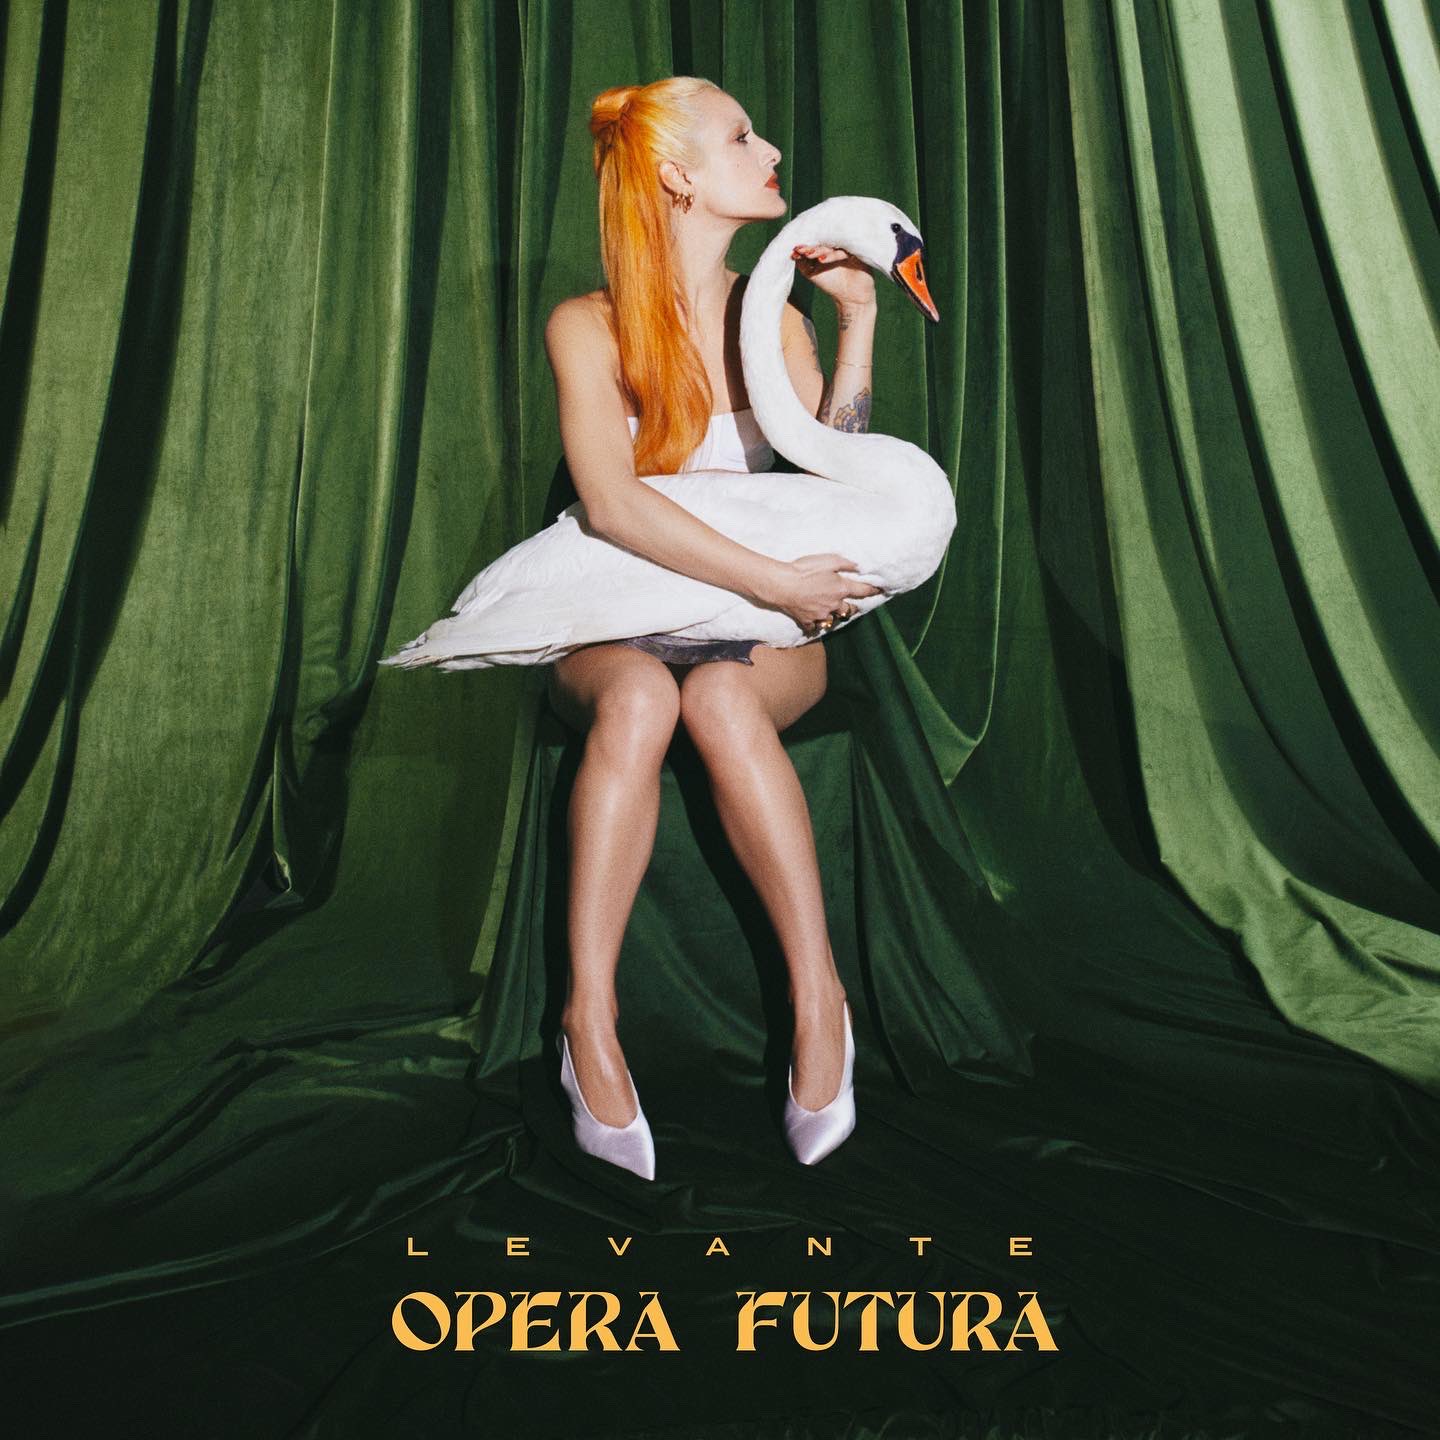 Levante — Opera futura cover artwork